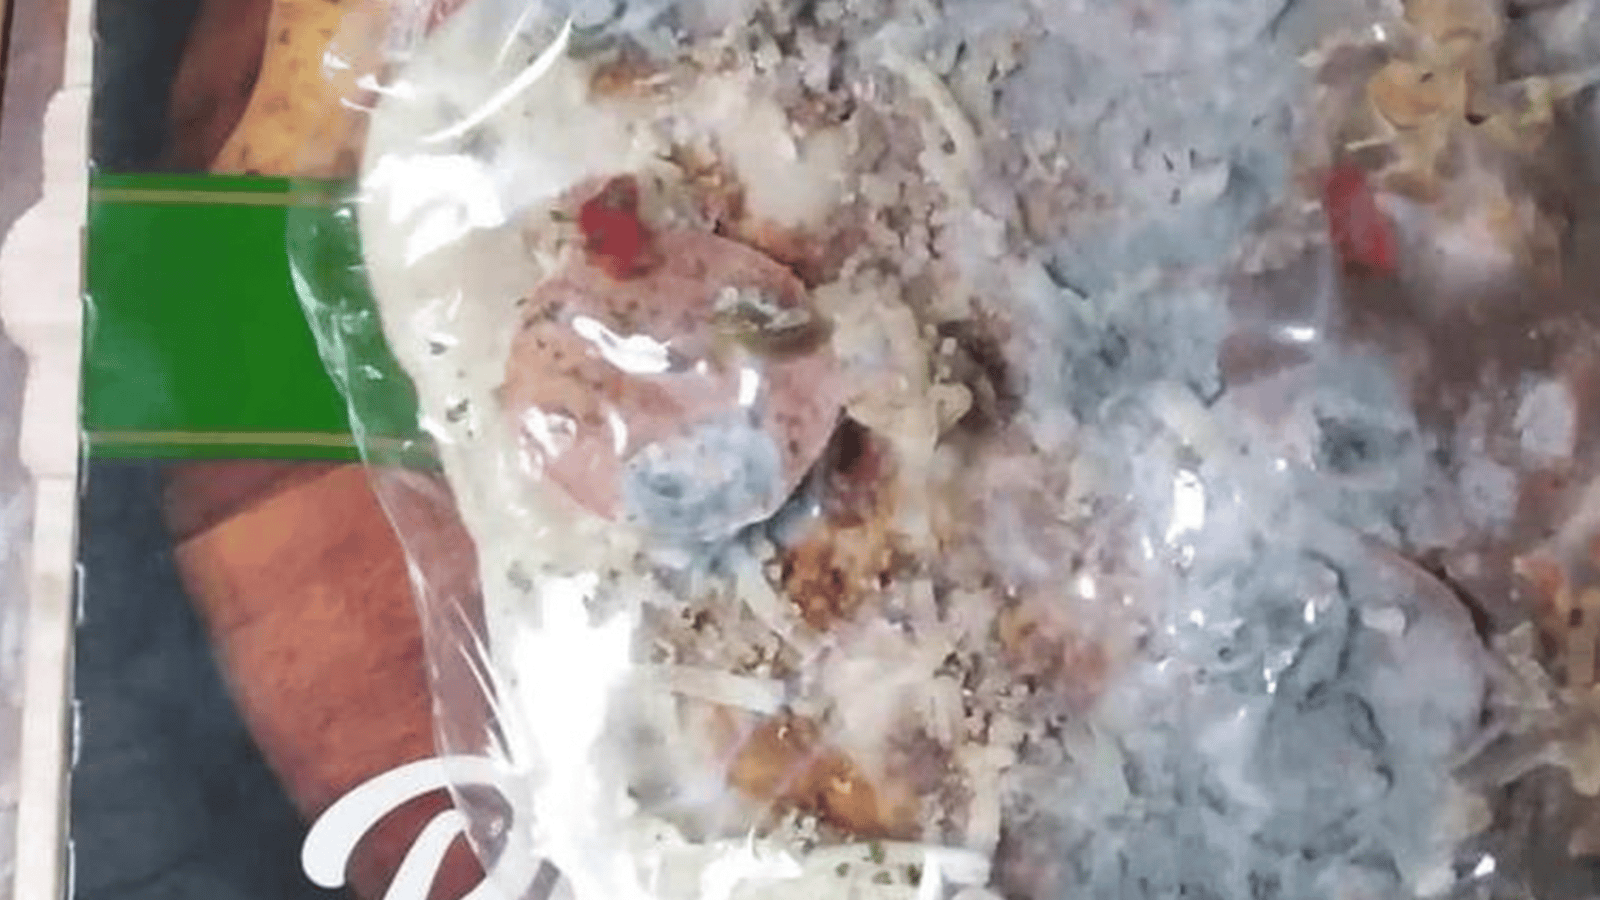  Des pizzas Delissio moisies découvertes dans le rayon des surgelés d'un IGA